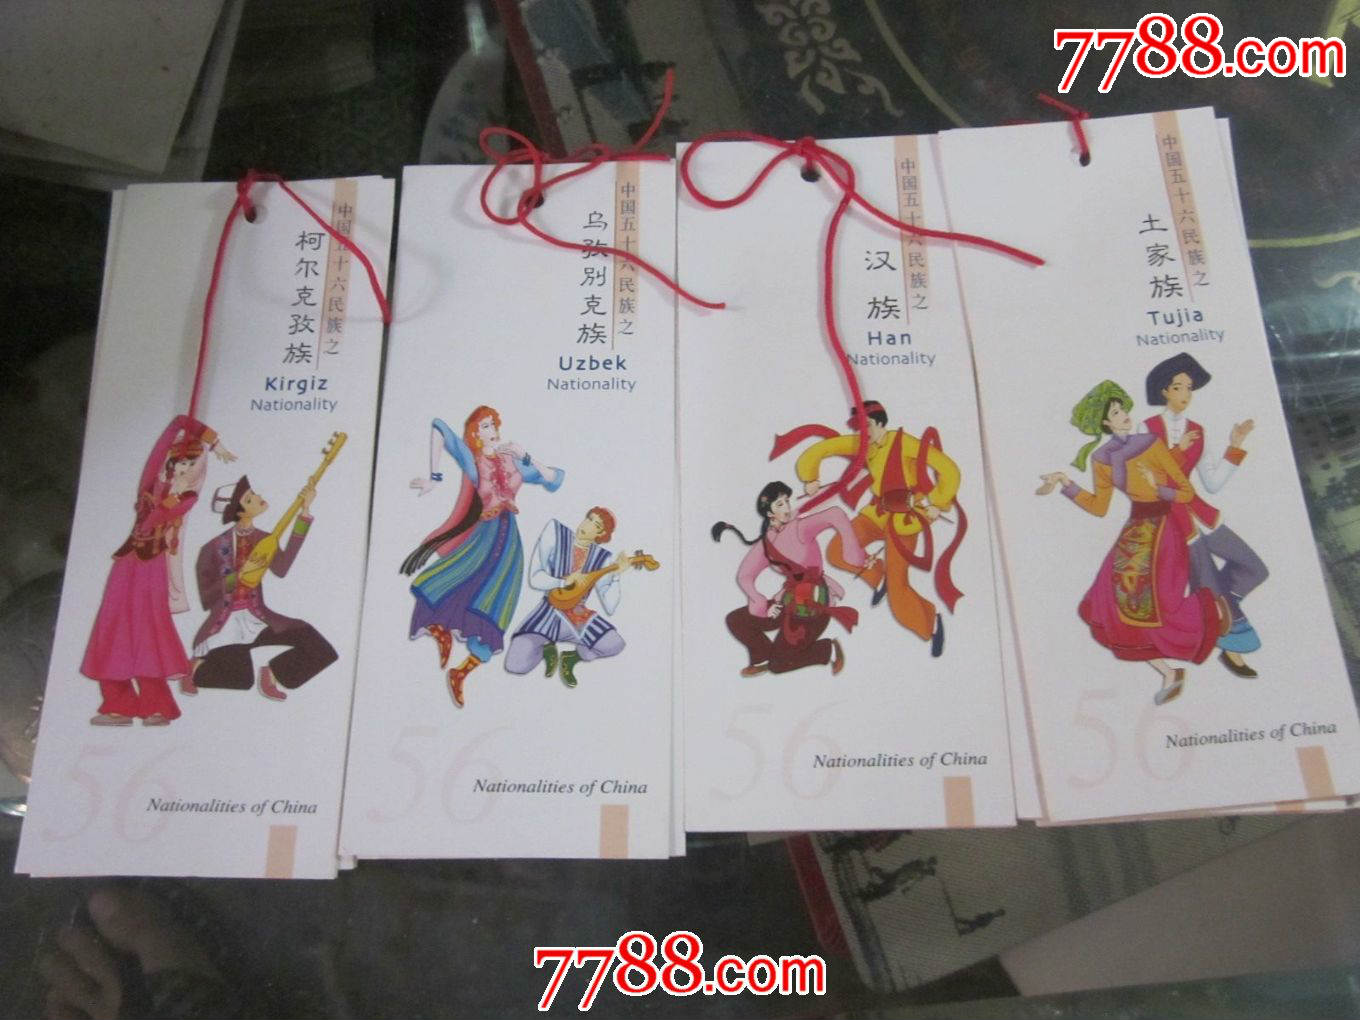 中国五十六民族纪念书签10套,美套56张全